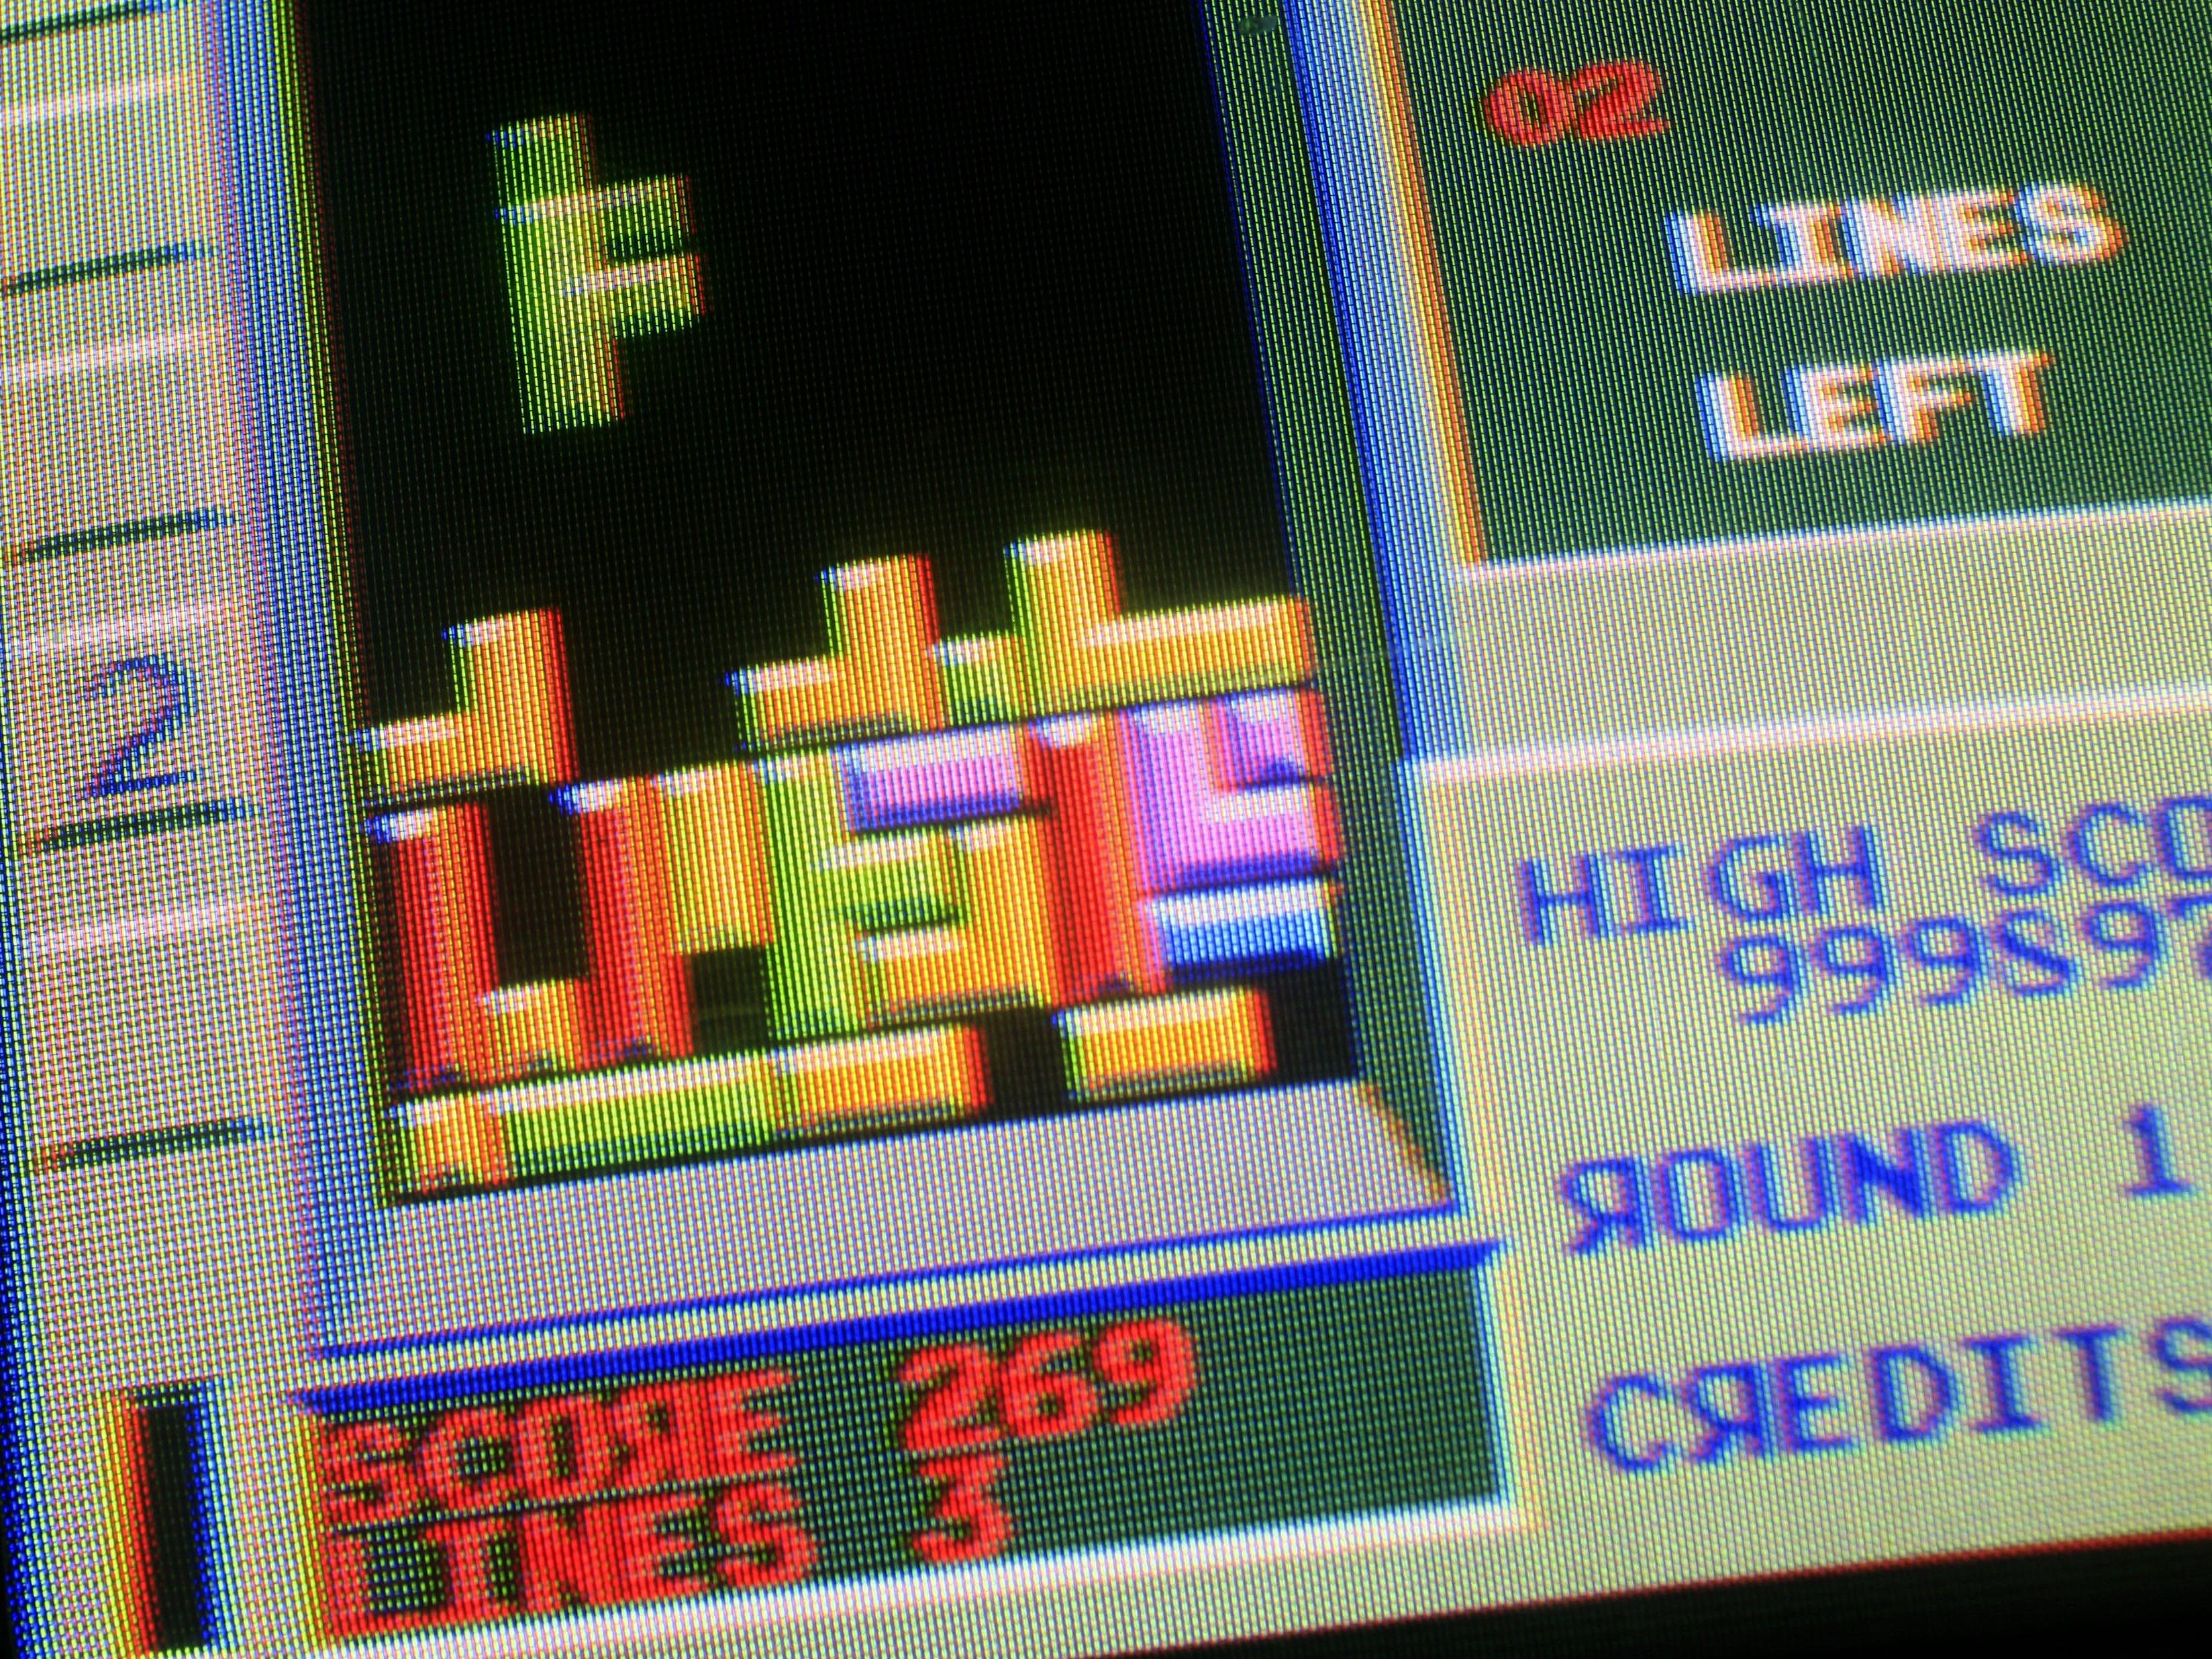 Tetris ist laut dem "Times" Magazin das beste Video-Spiel.